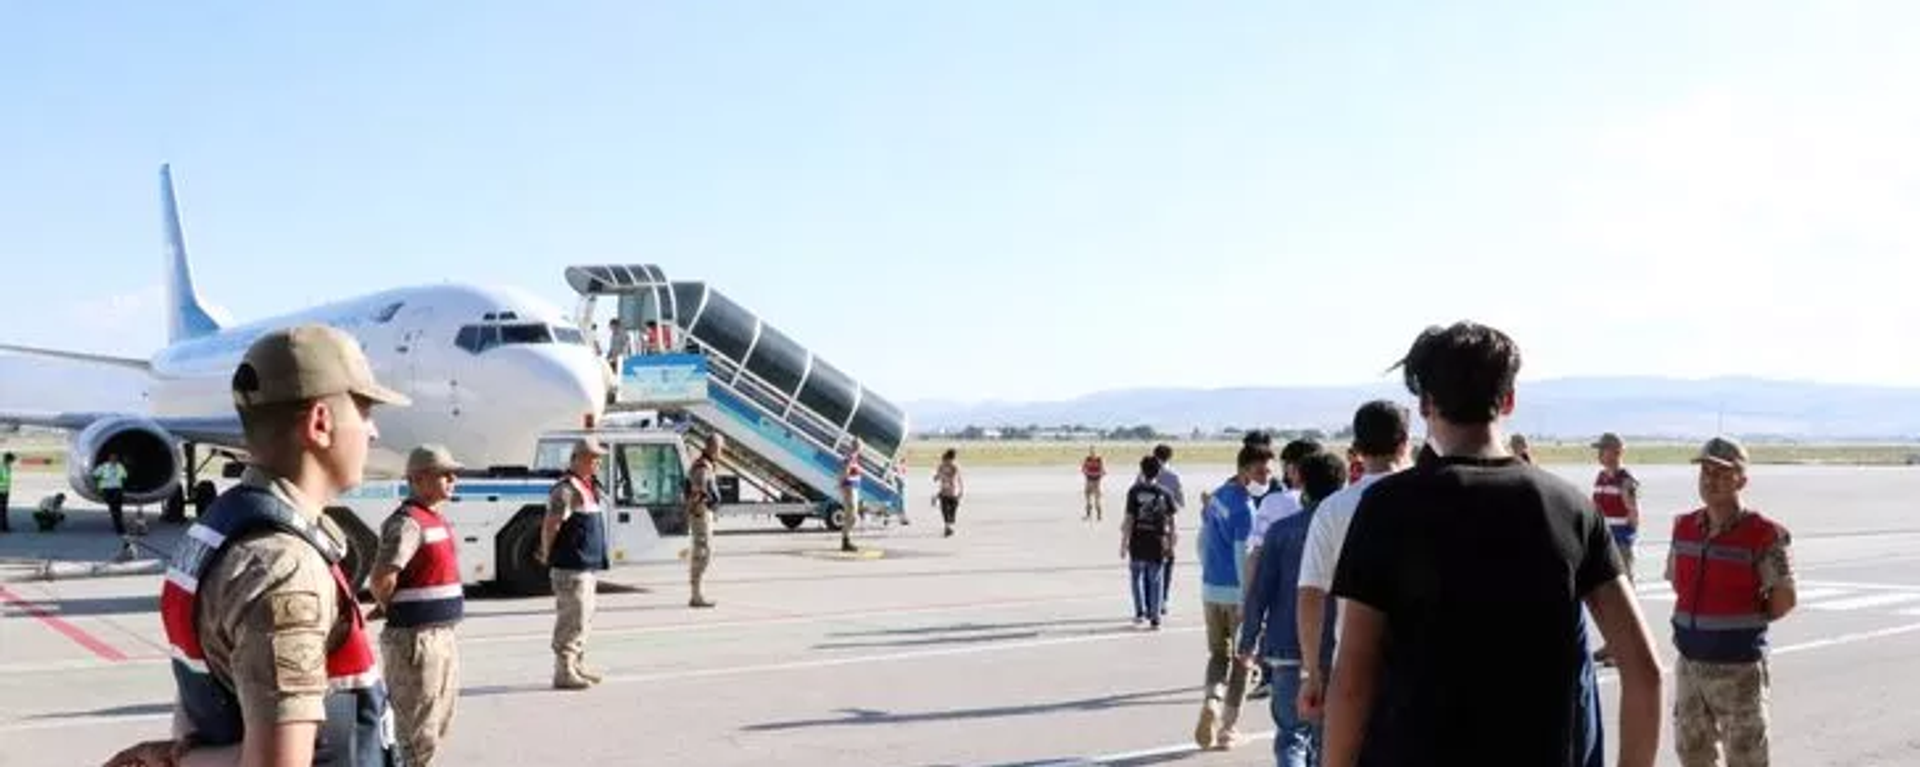 Türkiye'ye yasa dışı yollarla giriş yapan Afganistan uyruklu 227 göçmen, Erzurum'dan ülkelerine gönderildi. - Sputnik Türkiye, 1920, 10.08.2022